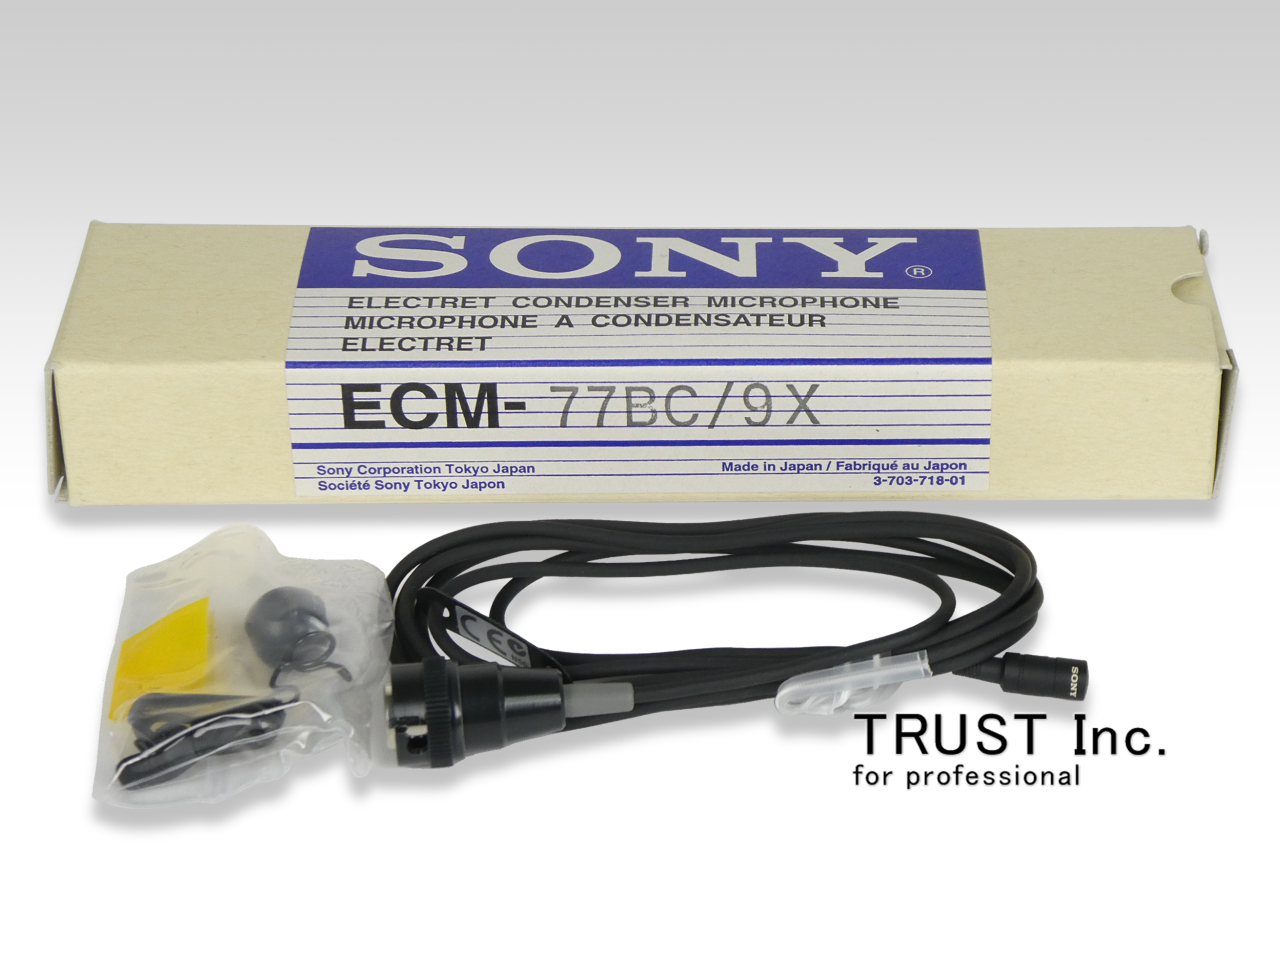 コンデンサーマイクロホン SONY エレクトレット ECM-77B 9X